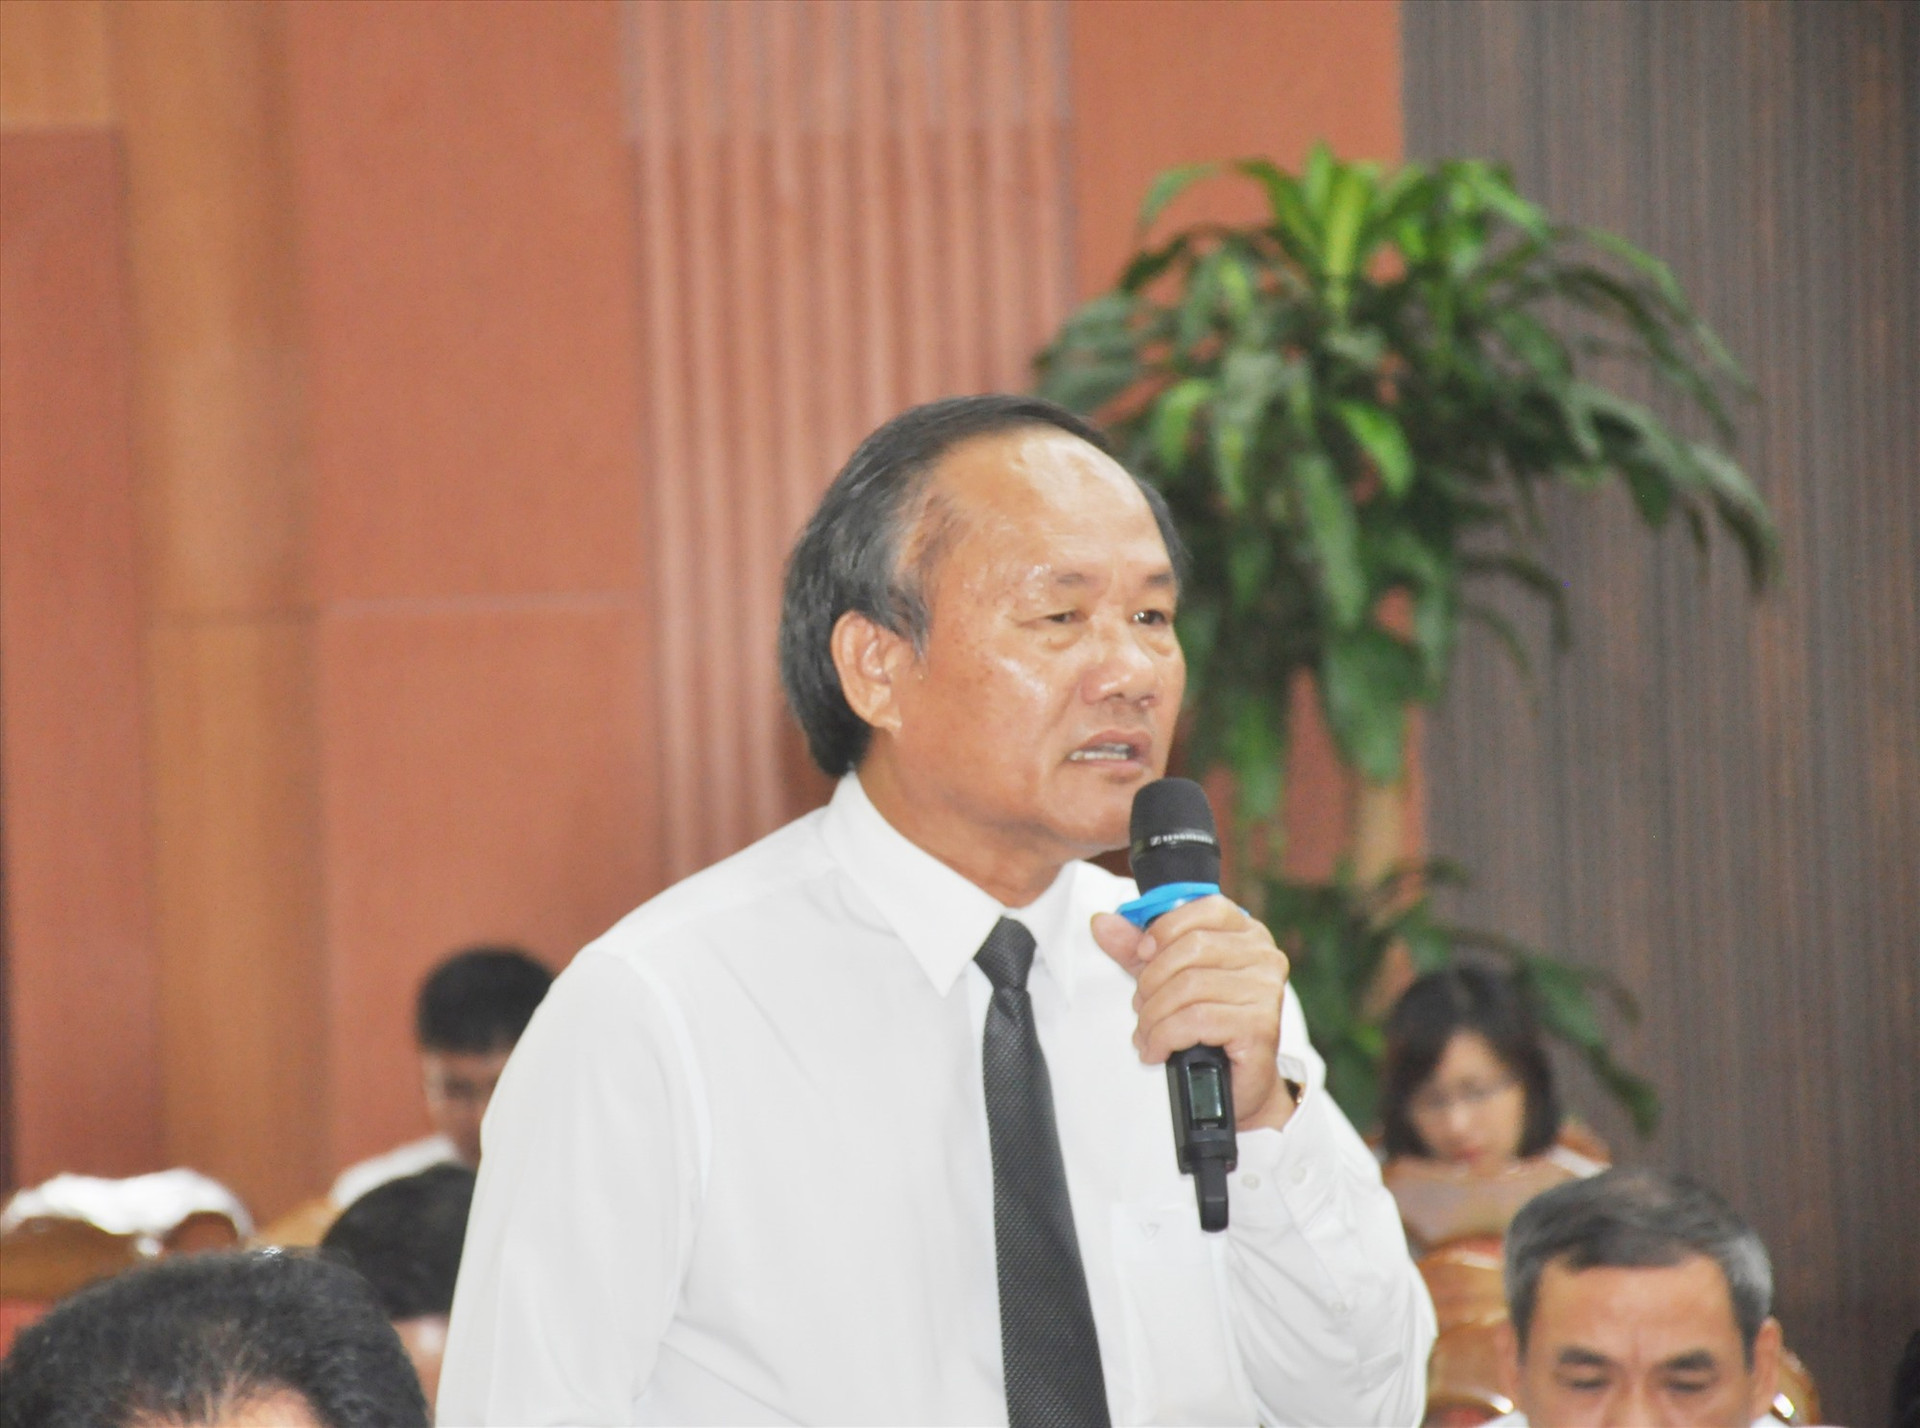 Ông Phạm Viết Tích - Giám đốc Sở NN&PTNT giải trình về việc bãi bỏ Nghị quyết 38 của HĐND tỉnh. Ảnh: P.V